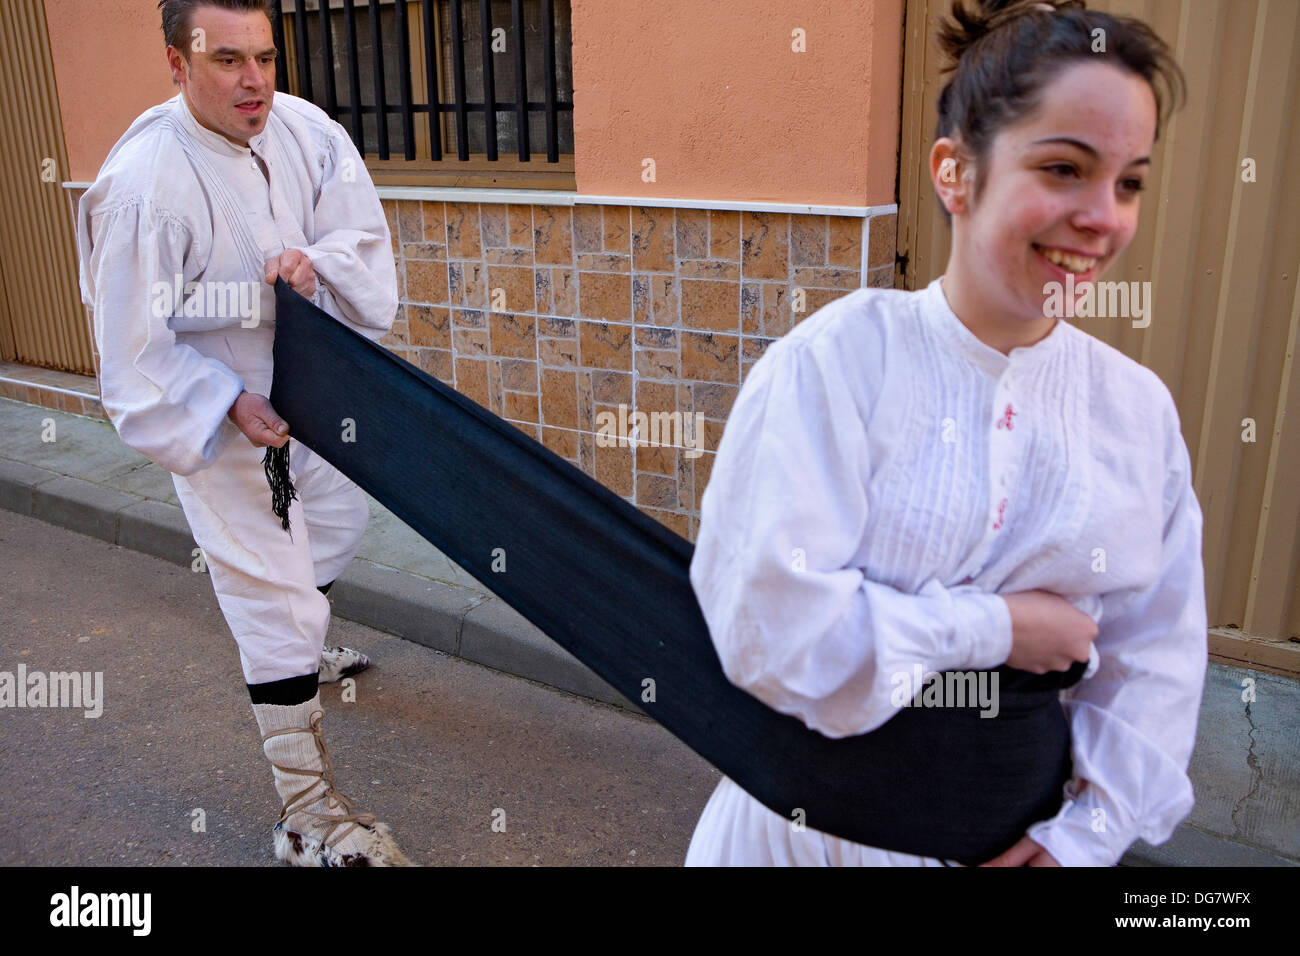 Antruejo (Karneval). Guirrios-Dressing. Lamas De La Ribera. León. Castilla y León. Spanien Stockfoto